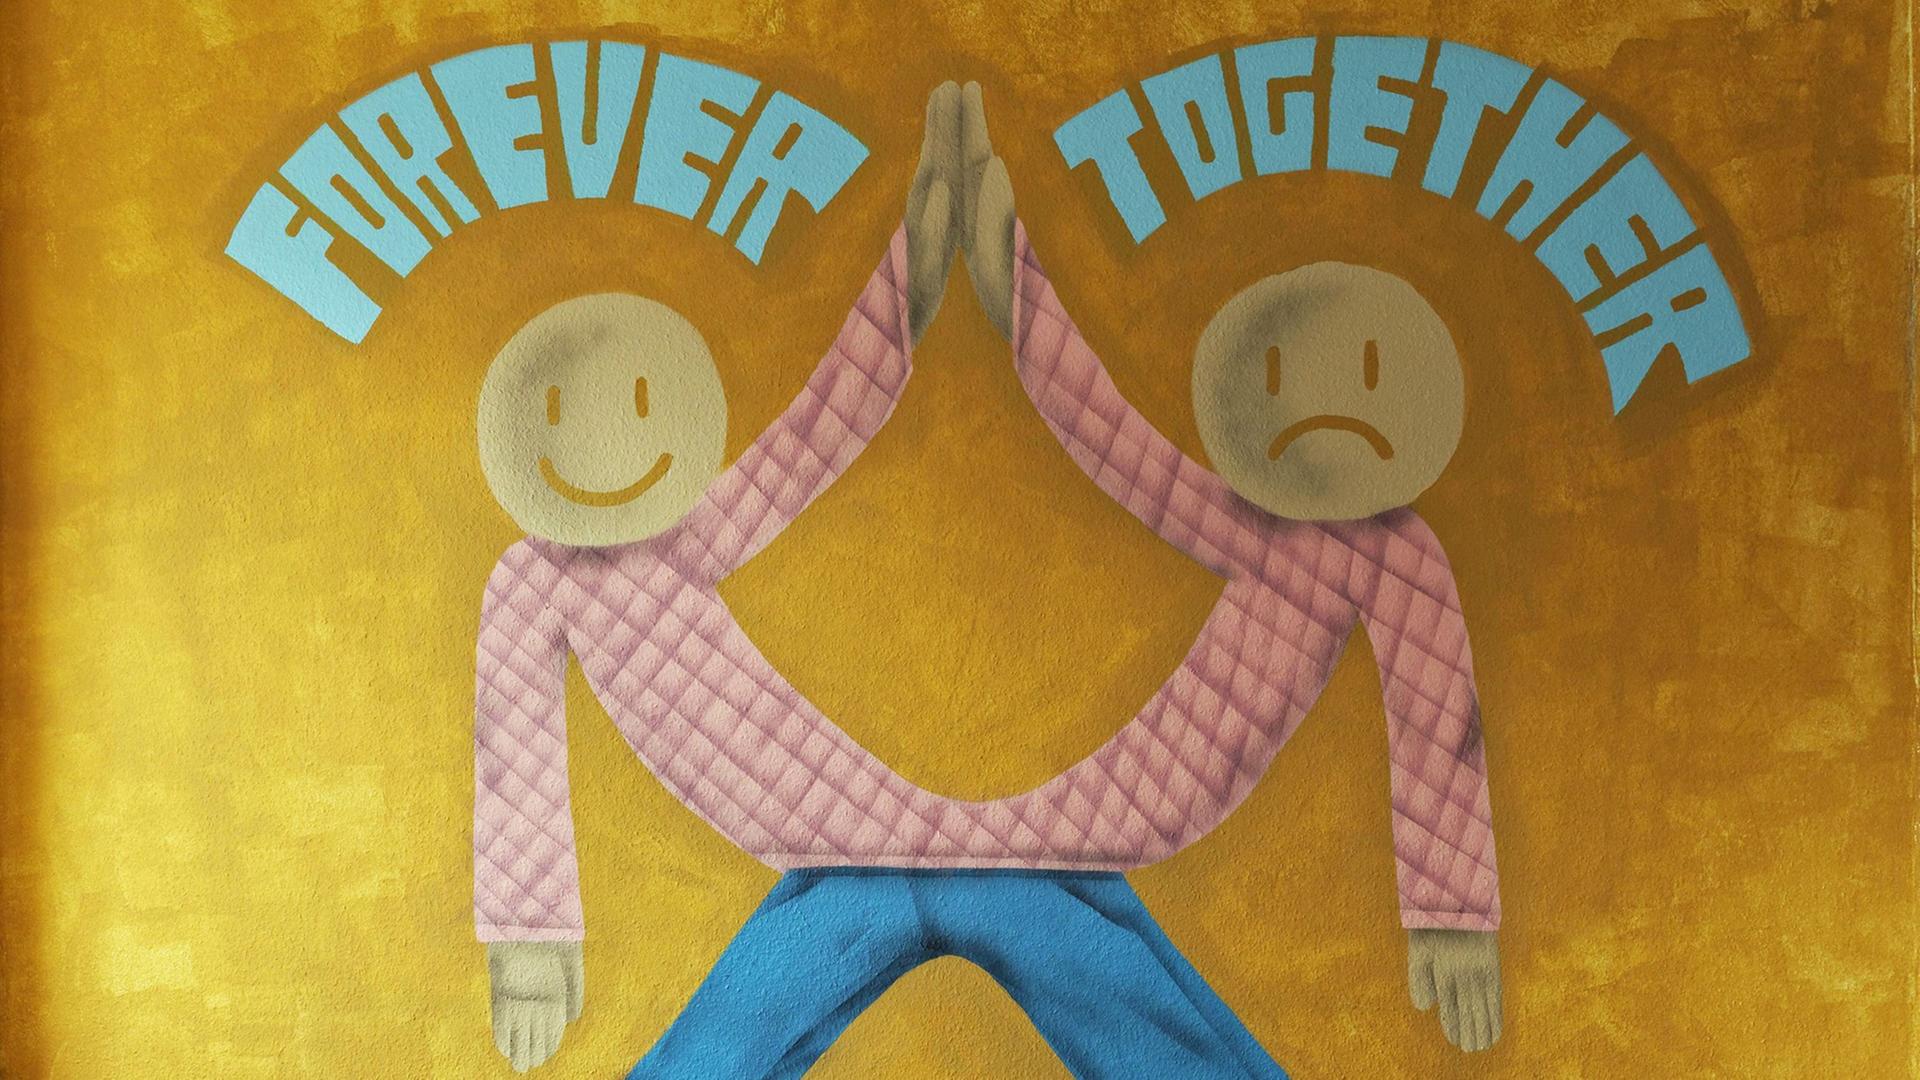 Forever together: Ein Wandbild beim 40 Grad Urban-Art-Festival in Düsseldorf zeigt zwei zusammengewachsene Figuren.